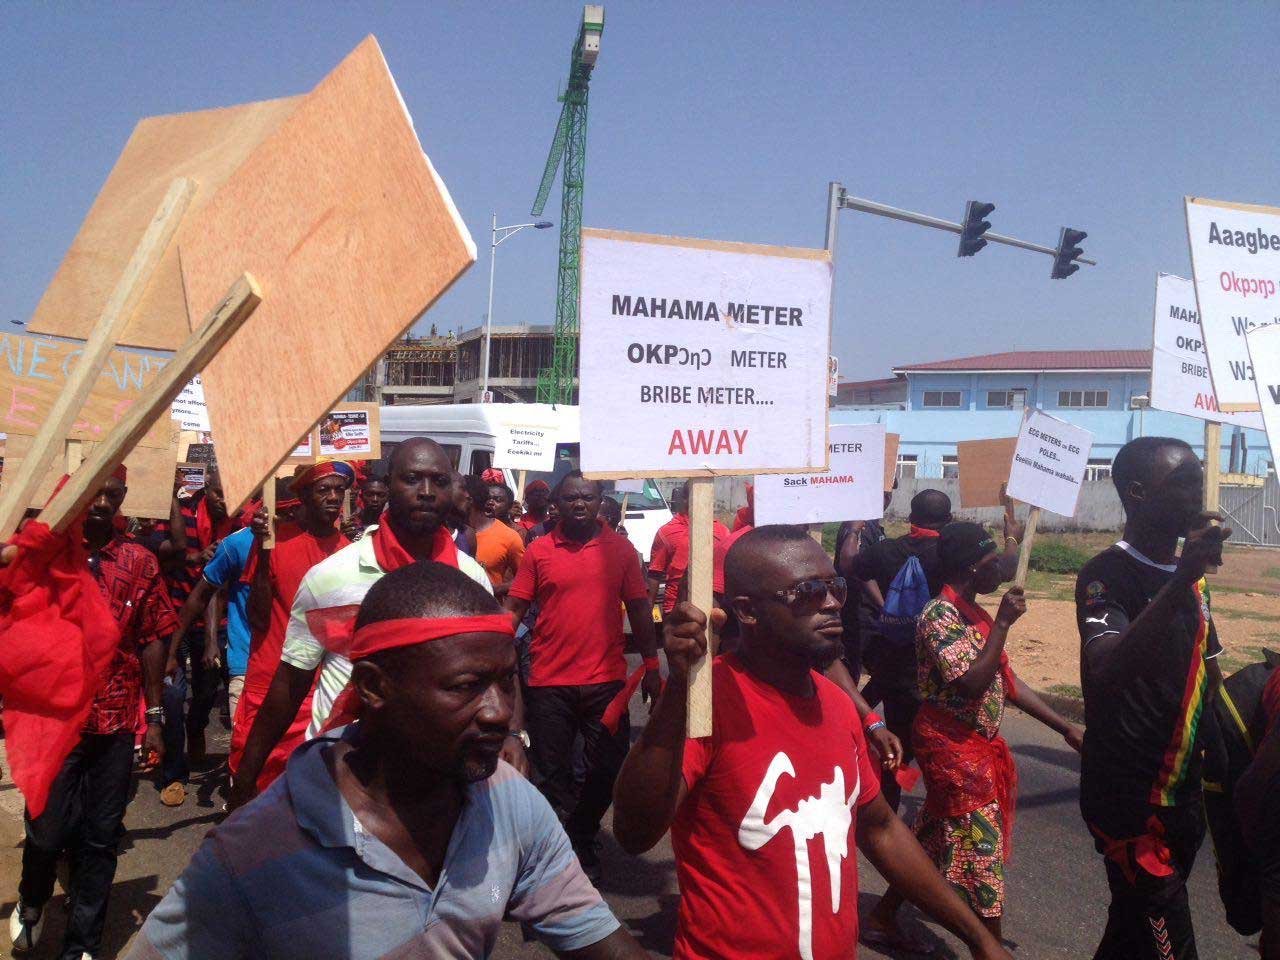 Accra and Tema, Ghana: Struggle Against Prepaid Water Meters